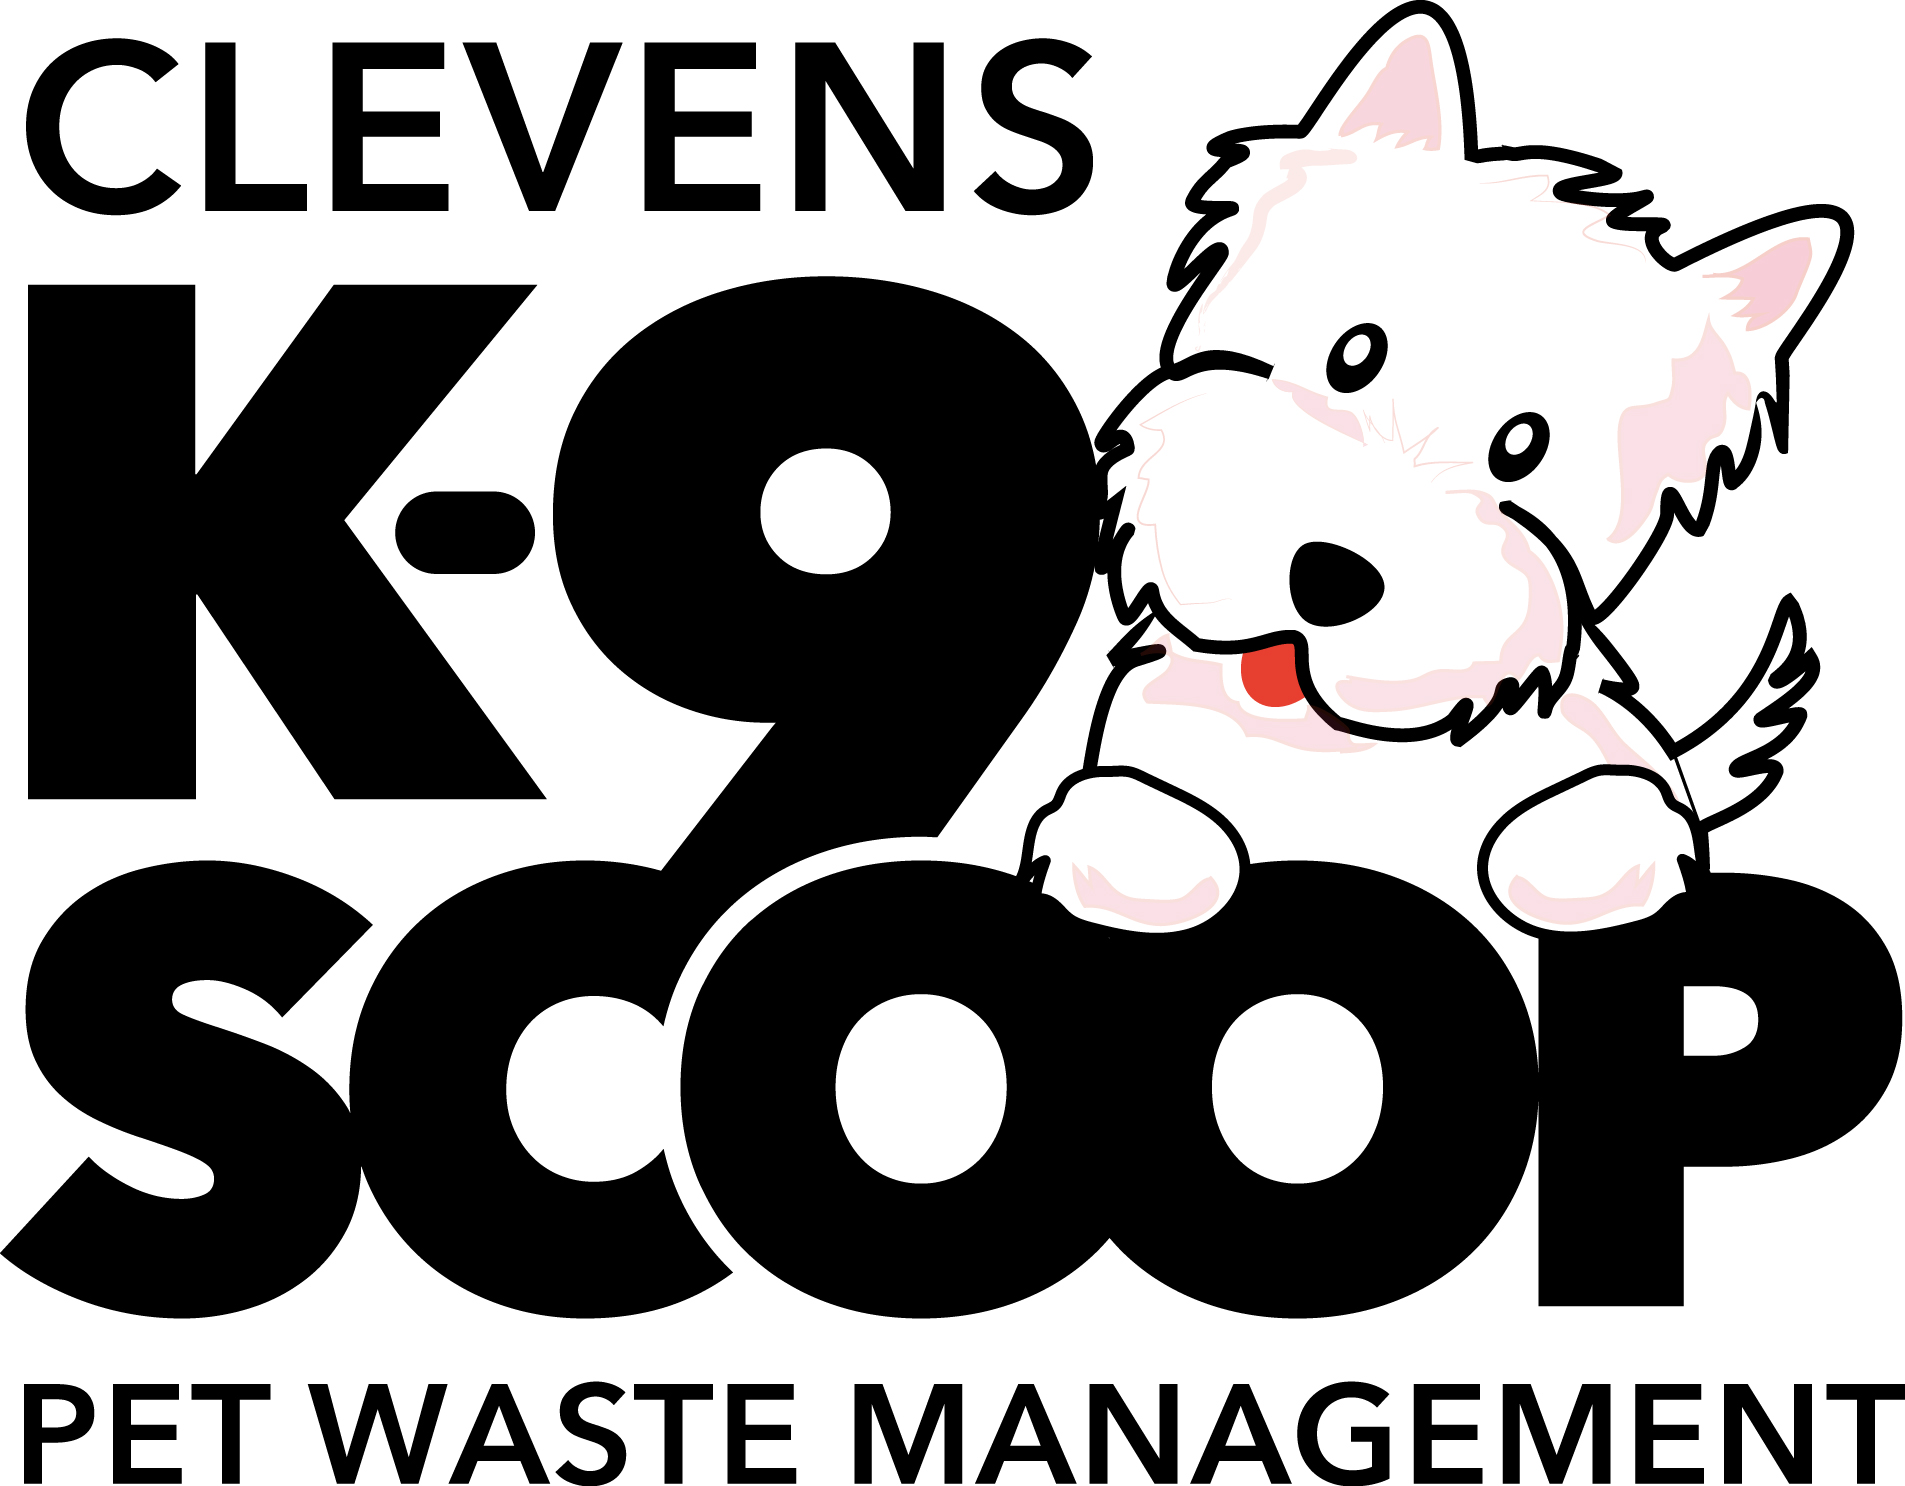 Clevens K-9 Scoop logo, Starting a pooper scooper business